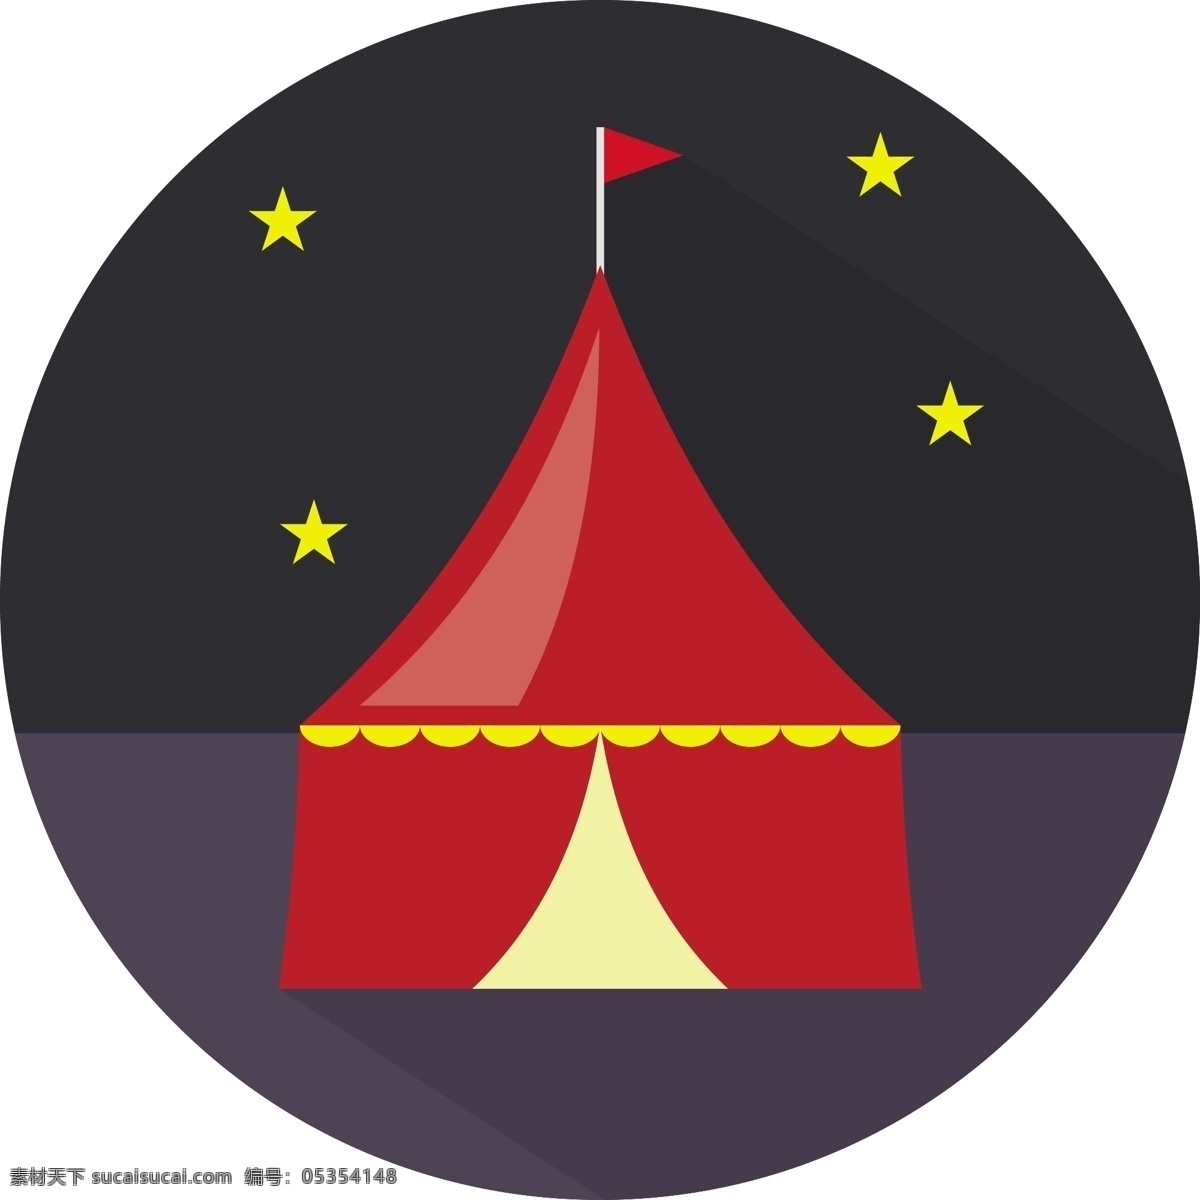 马戏团 帐篷 矢量 图标 平面设计 矢量素材 设计素材 背景素材